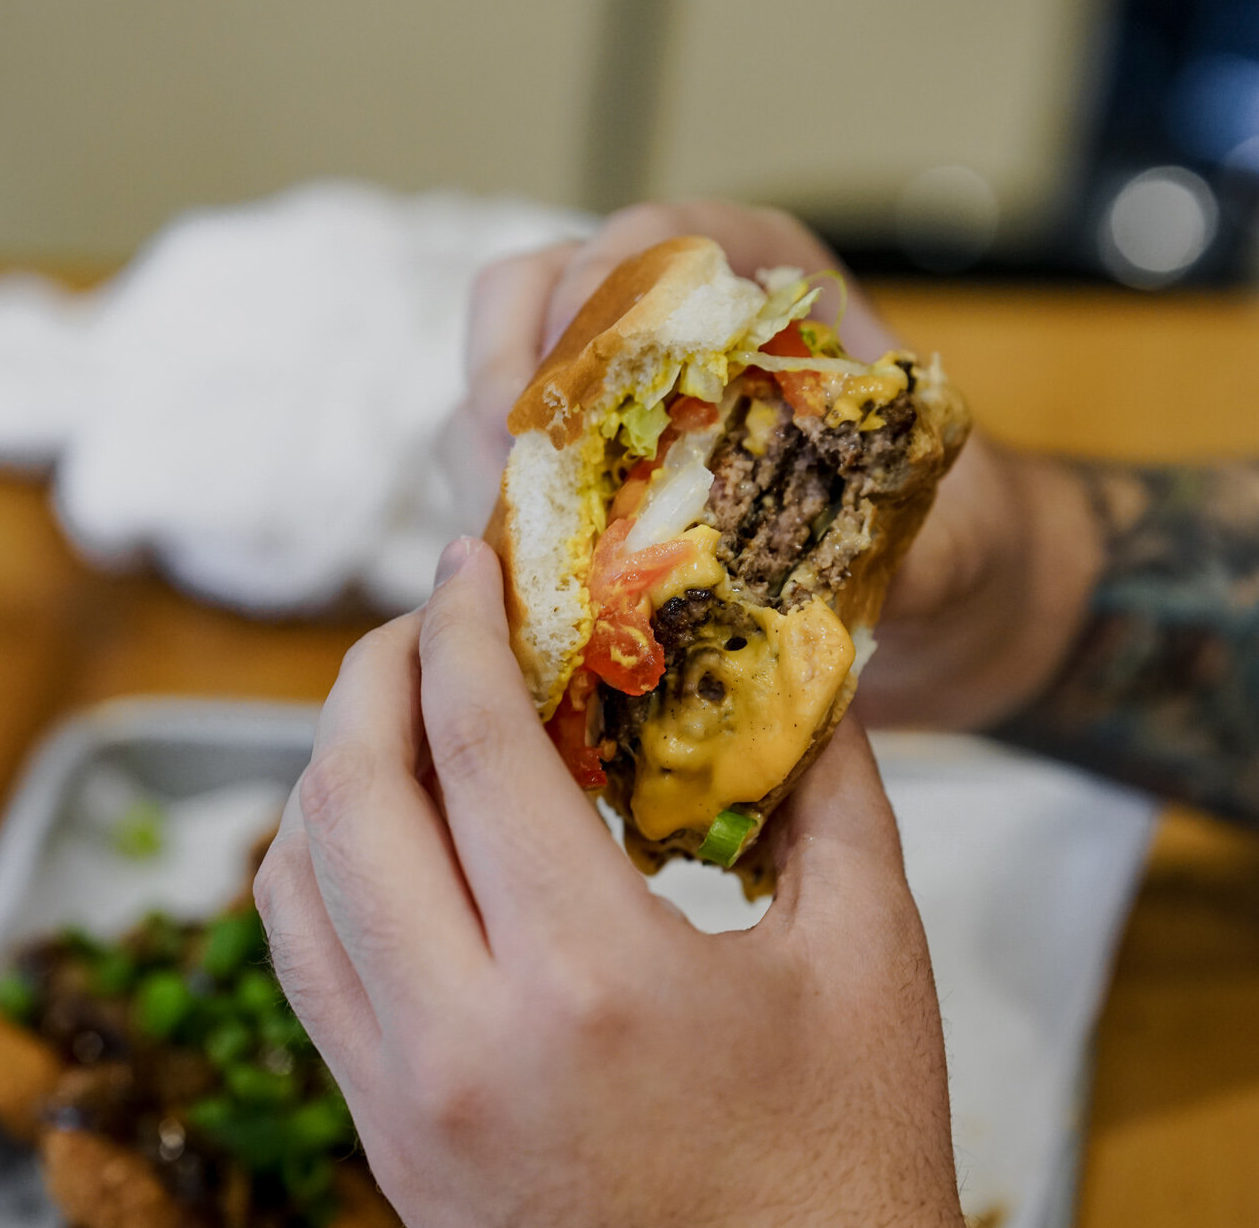 hands holding a burger